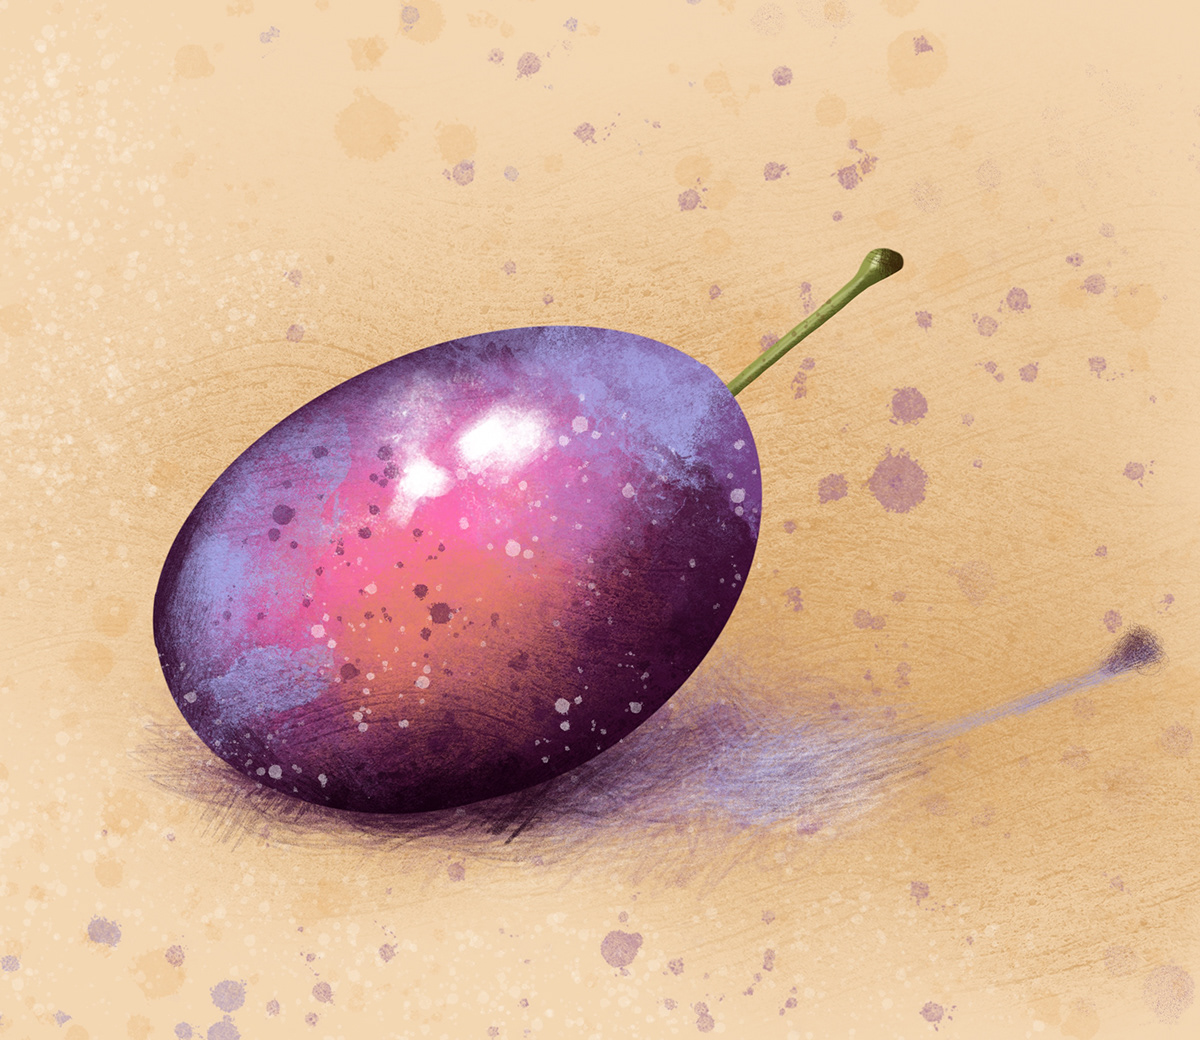 apple autumn digital illustration Fruit fruits illustrations Nature Pear Plum Procreate